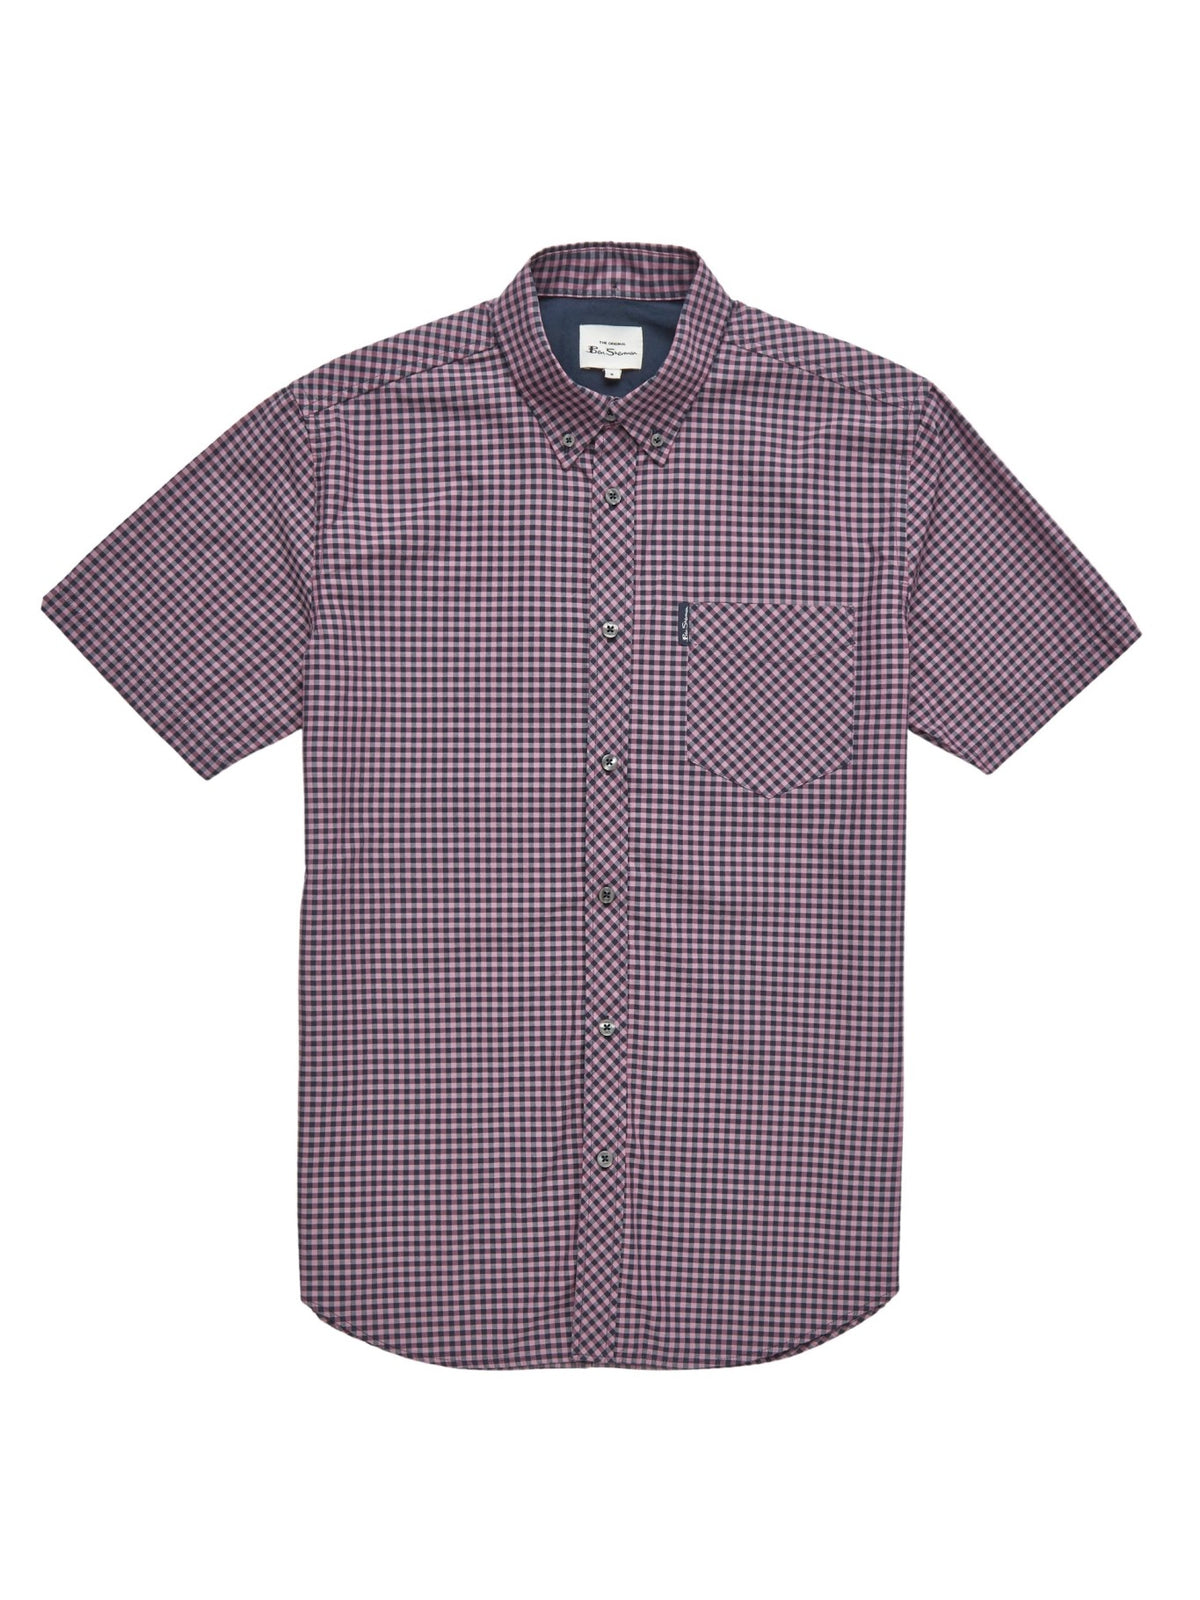 Ben Sherman Mens Signature Gingham Shirt - Short Sleeved, 06, 59142, Violet